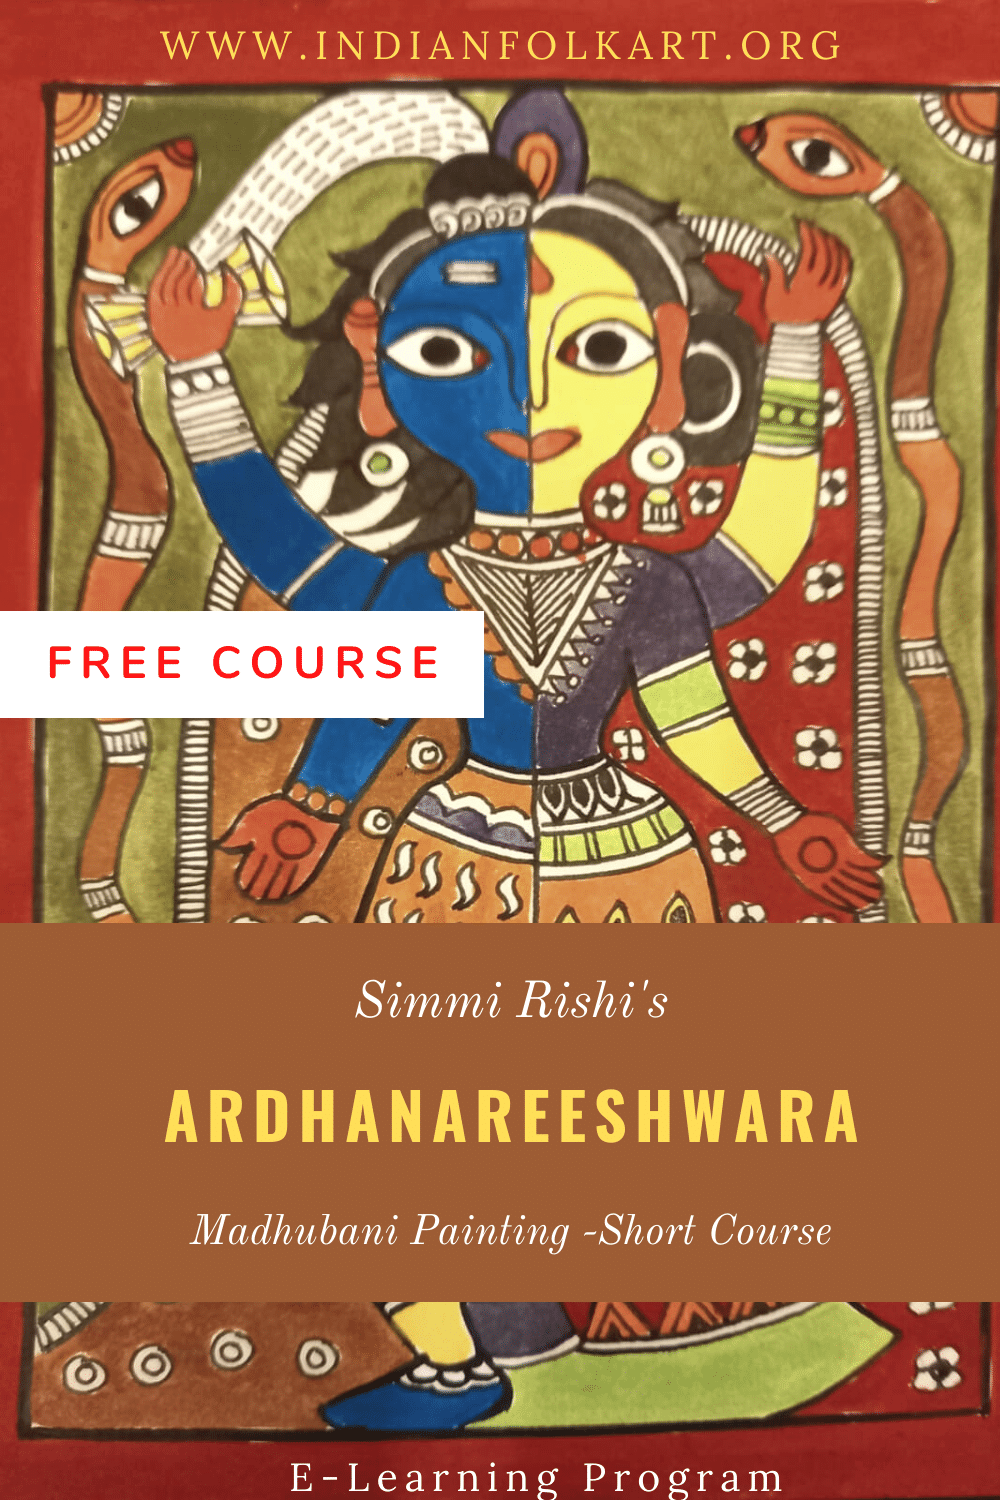 SR01 – Madhubani Painting Short Course – Ardhanareeshwara.